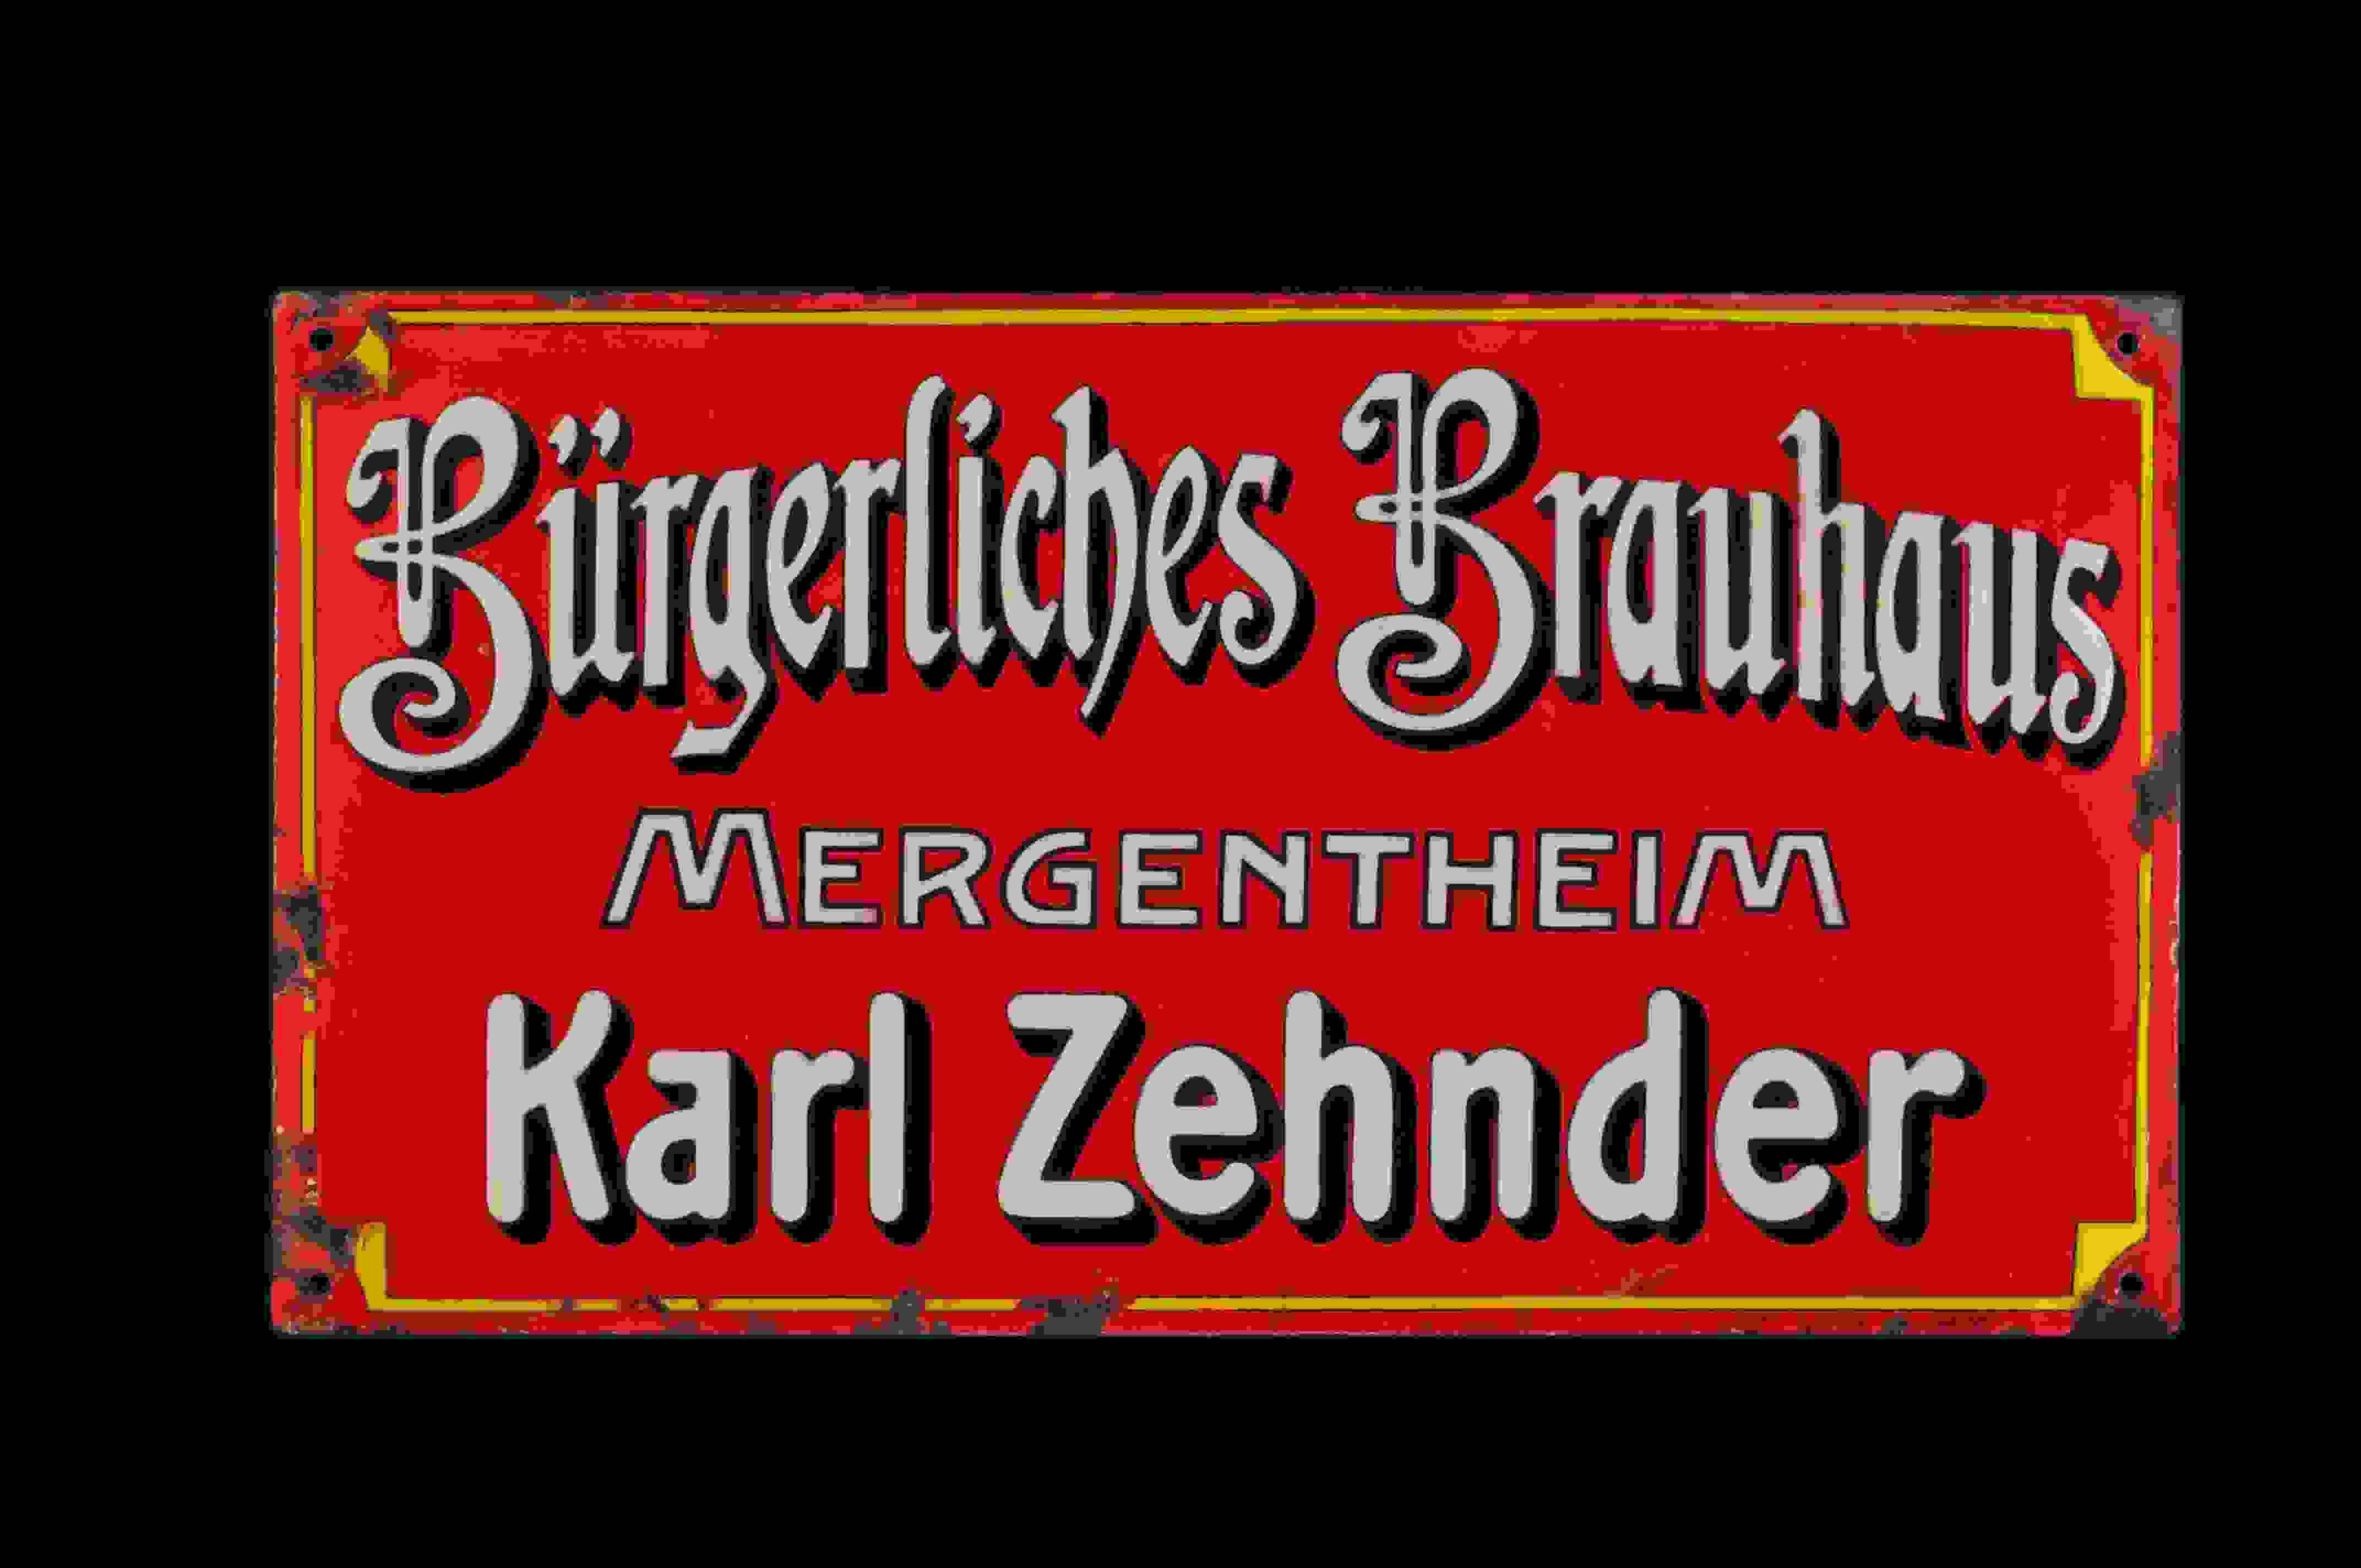 Bürgerliches Brauhaus Mergentheim 